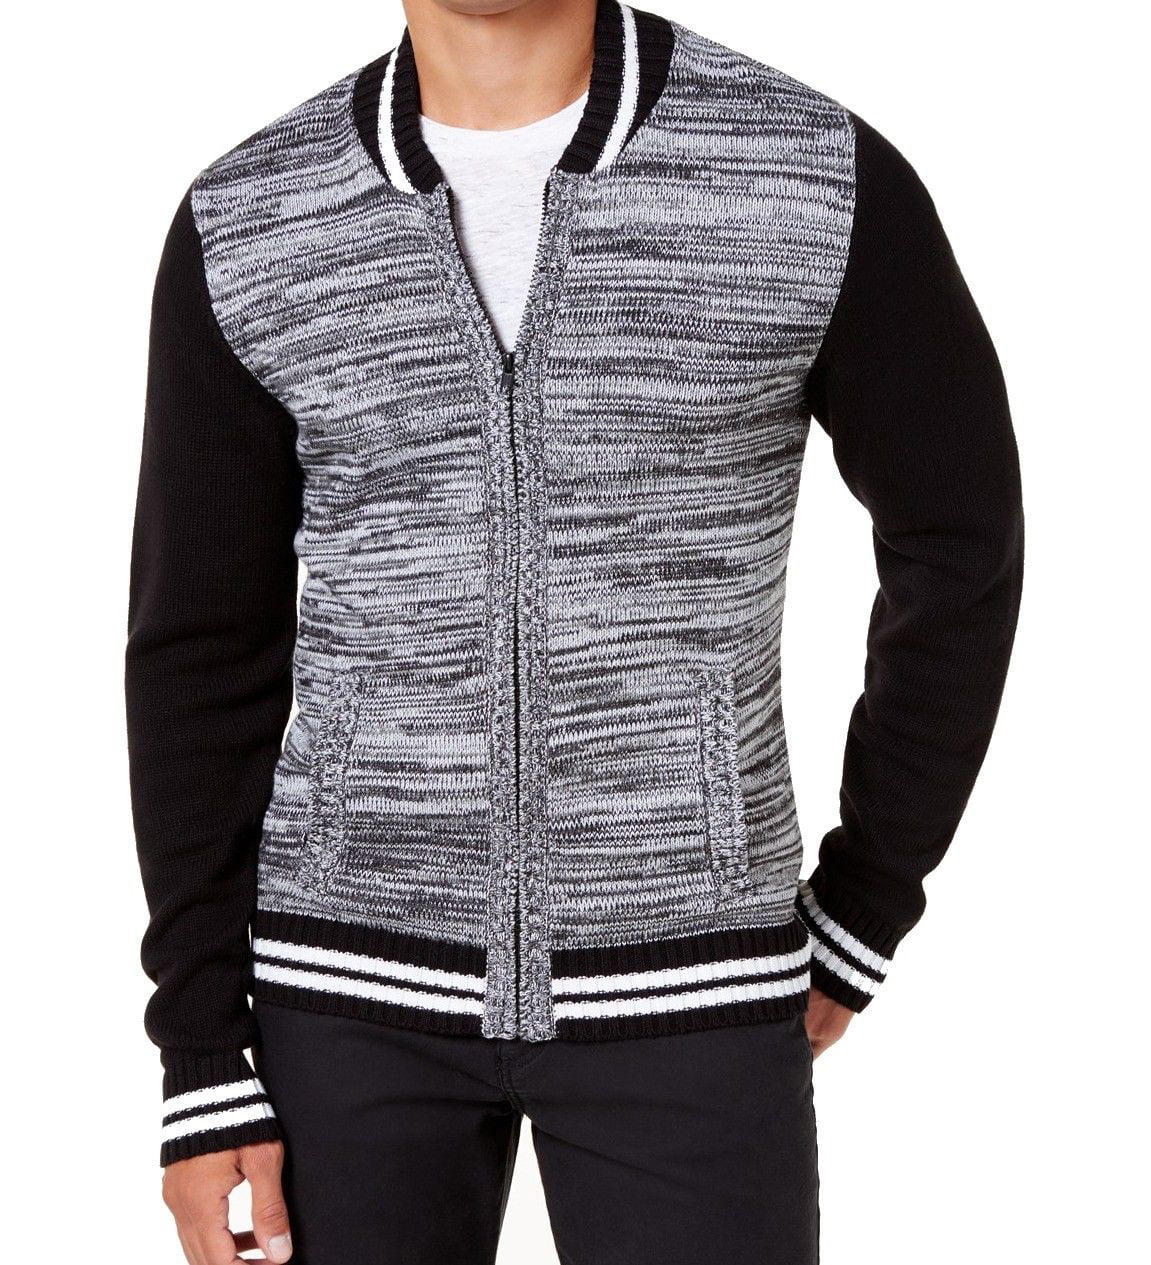 D555 Full Zip Front Sweater Big Size XXL 2XL XXXL 3XL XXXXL 4XL SALE PRICE 